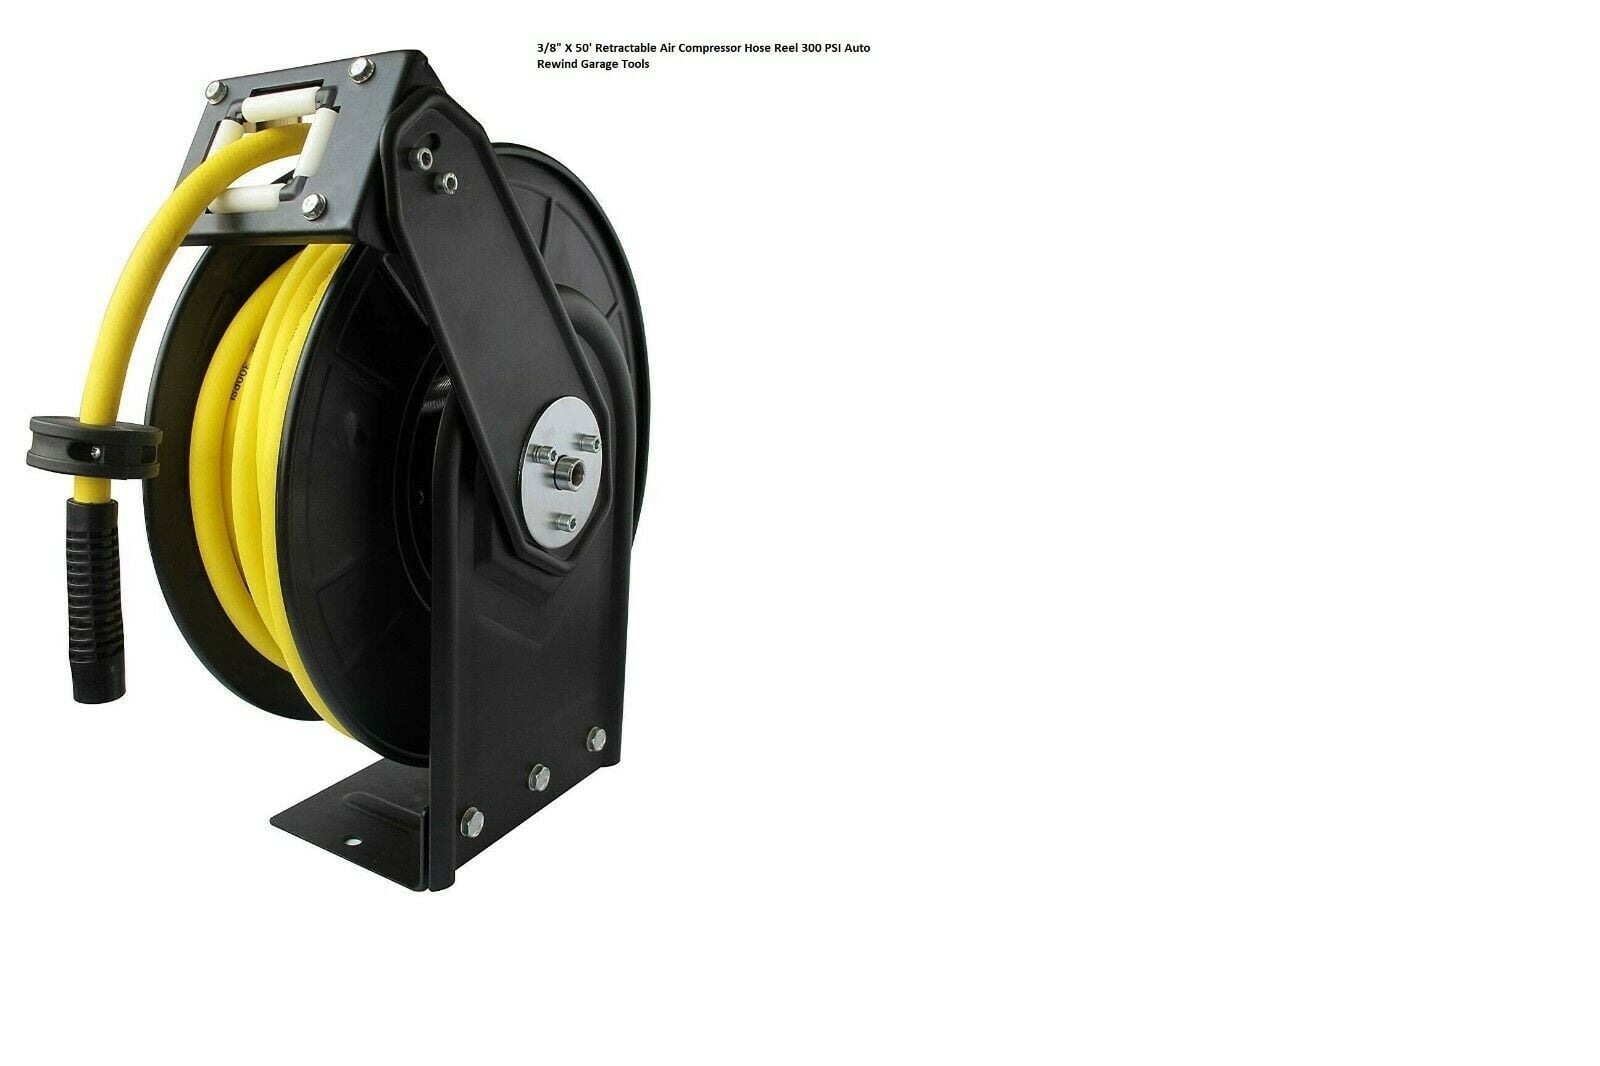 10-15M 3/8" Retractable Air Compressor Hose Reel Storage Auto Rewind Garage Tool 